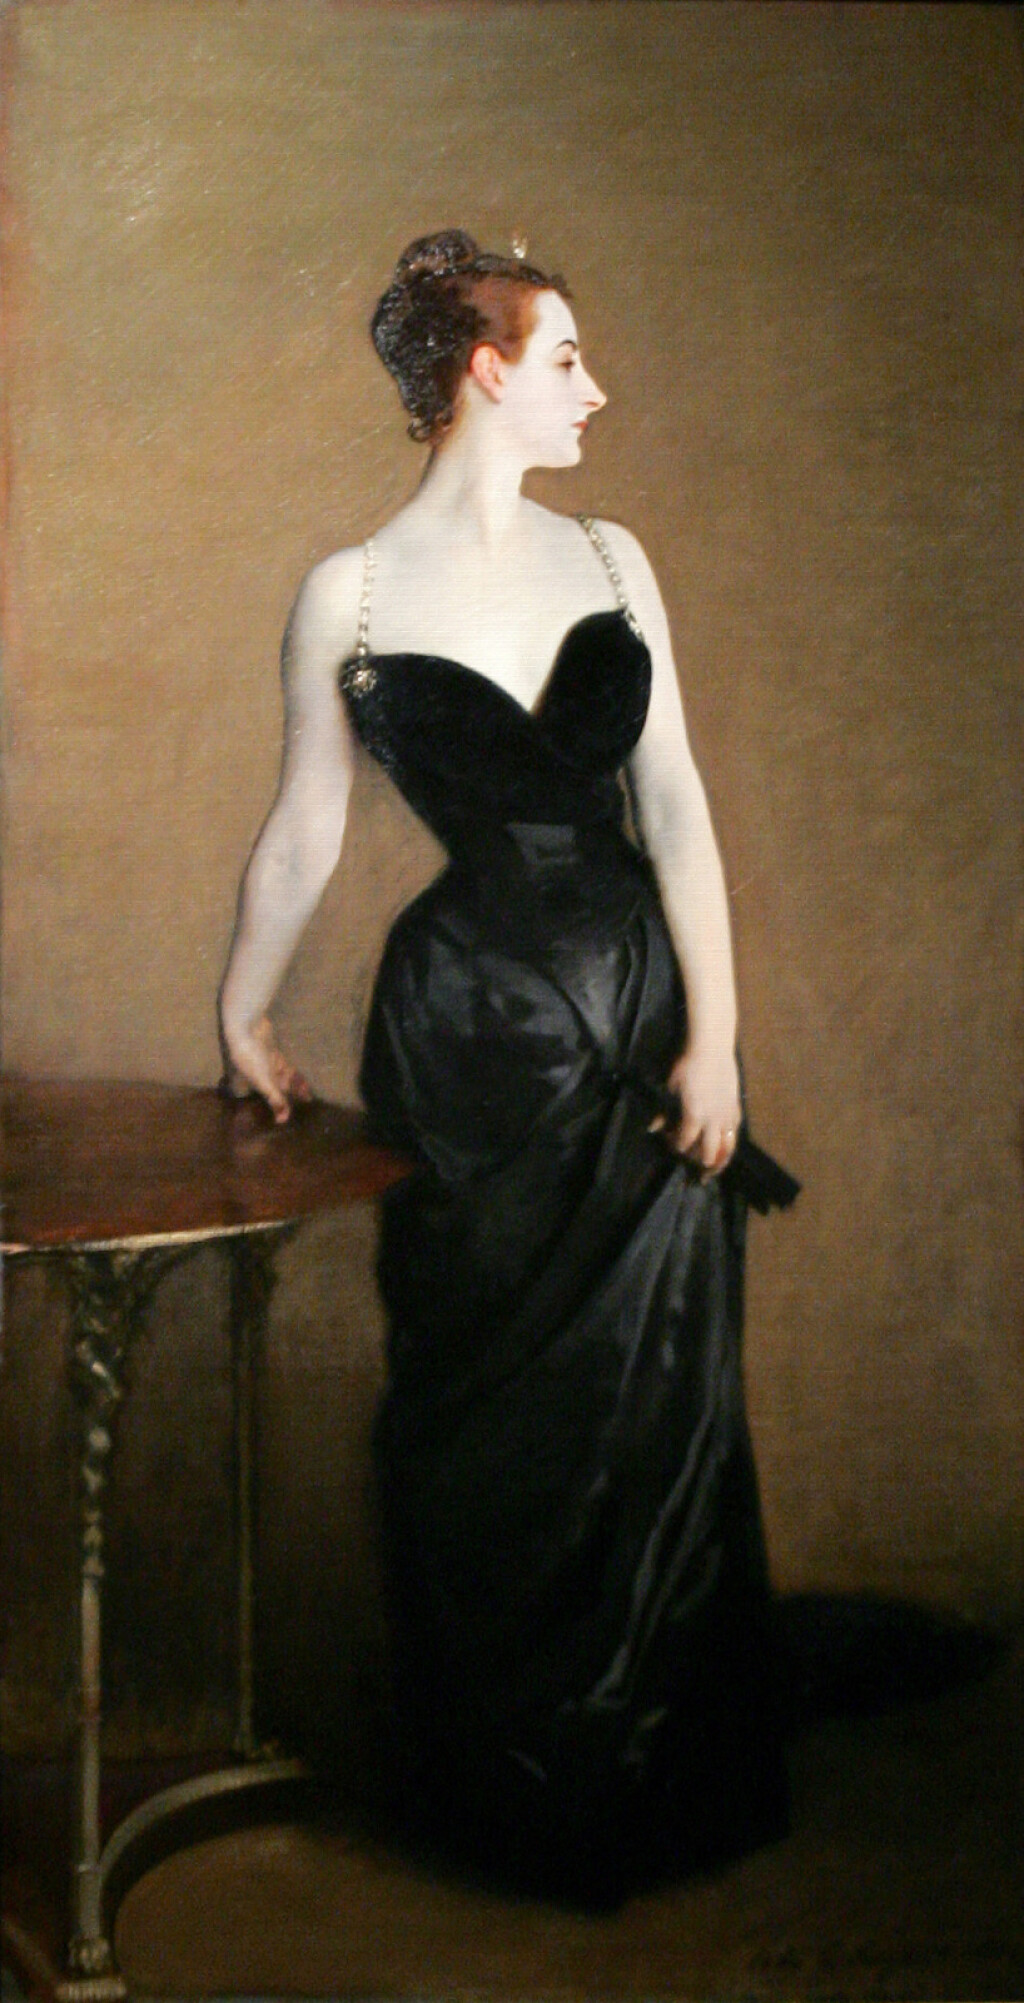 Haljine Julije Roberts iz filma 'Zgodna žena' inspirirana je slikom Madame X američkog umjetnika Johna Singera Sargenta